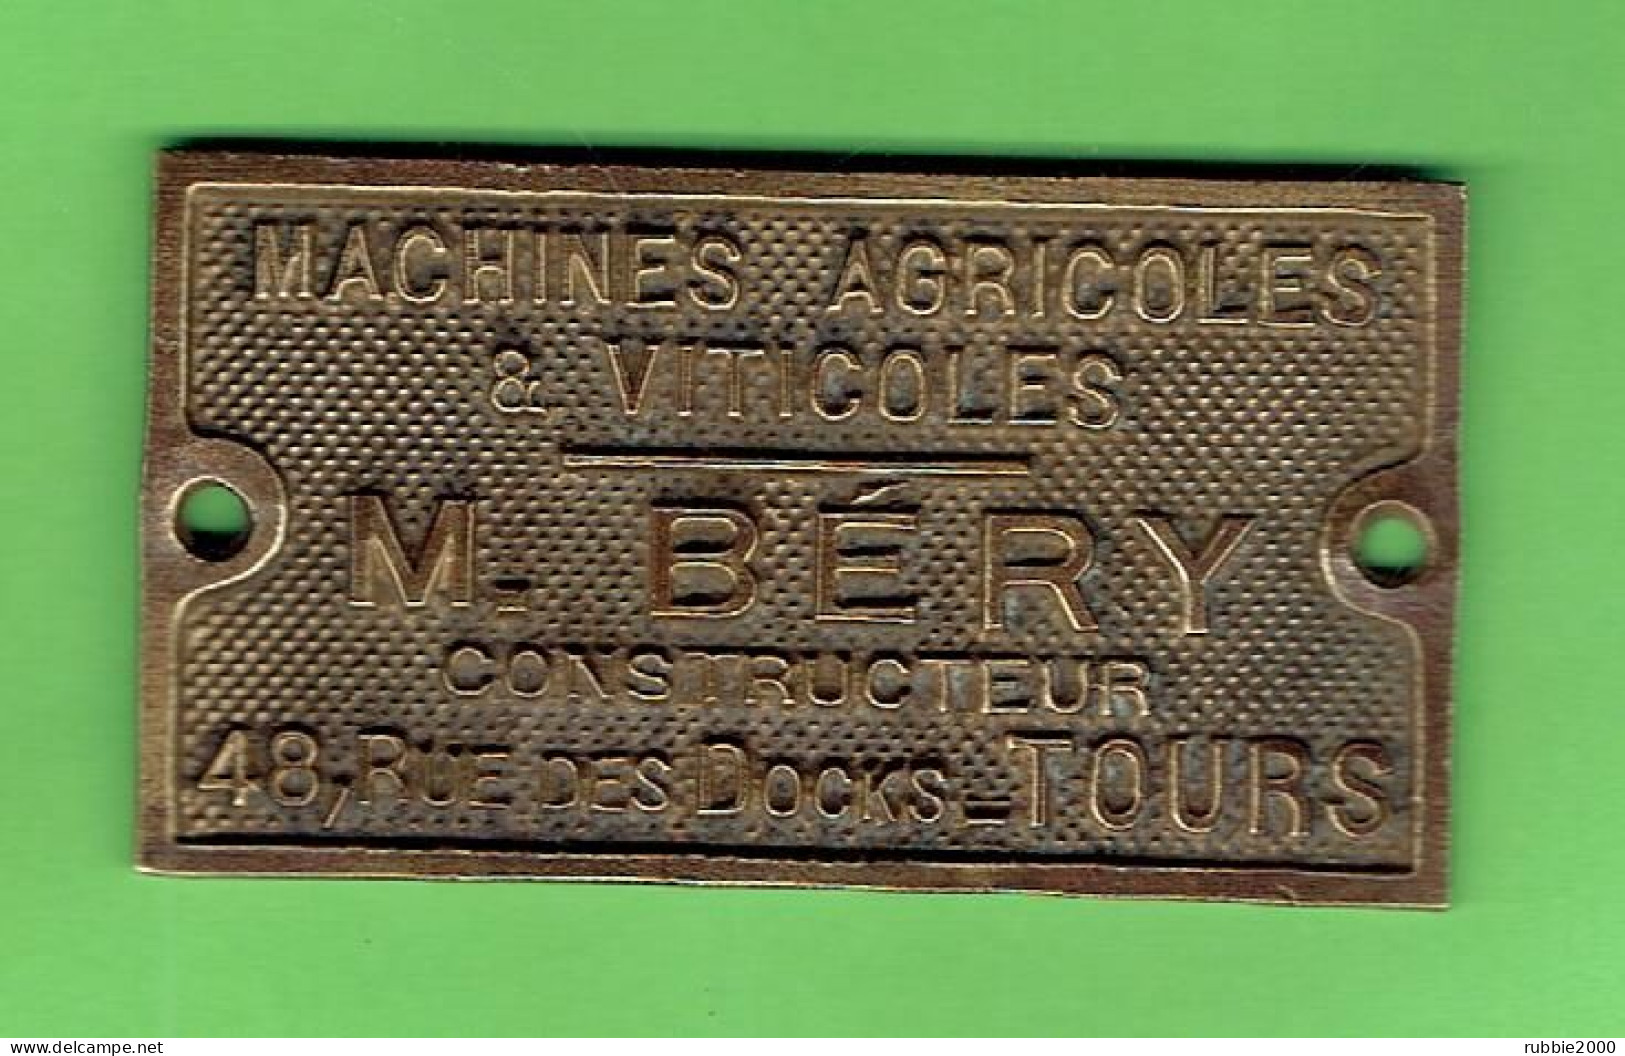 PLAQUE BRONZE PUBLICITAIRE MACHINES AGRICOLES ET VITICOLES M. BERY CONSTRUCTEUR 48 RUE DES DOOKS A TOURS - Antike Werkzeuge